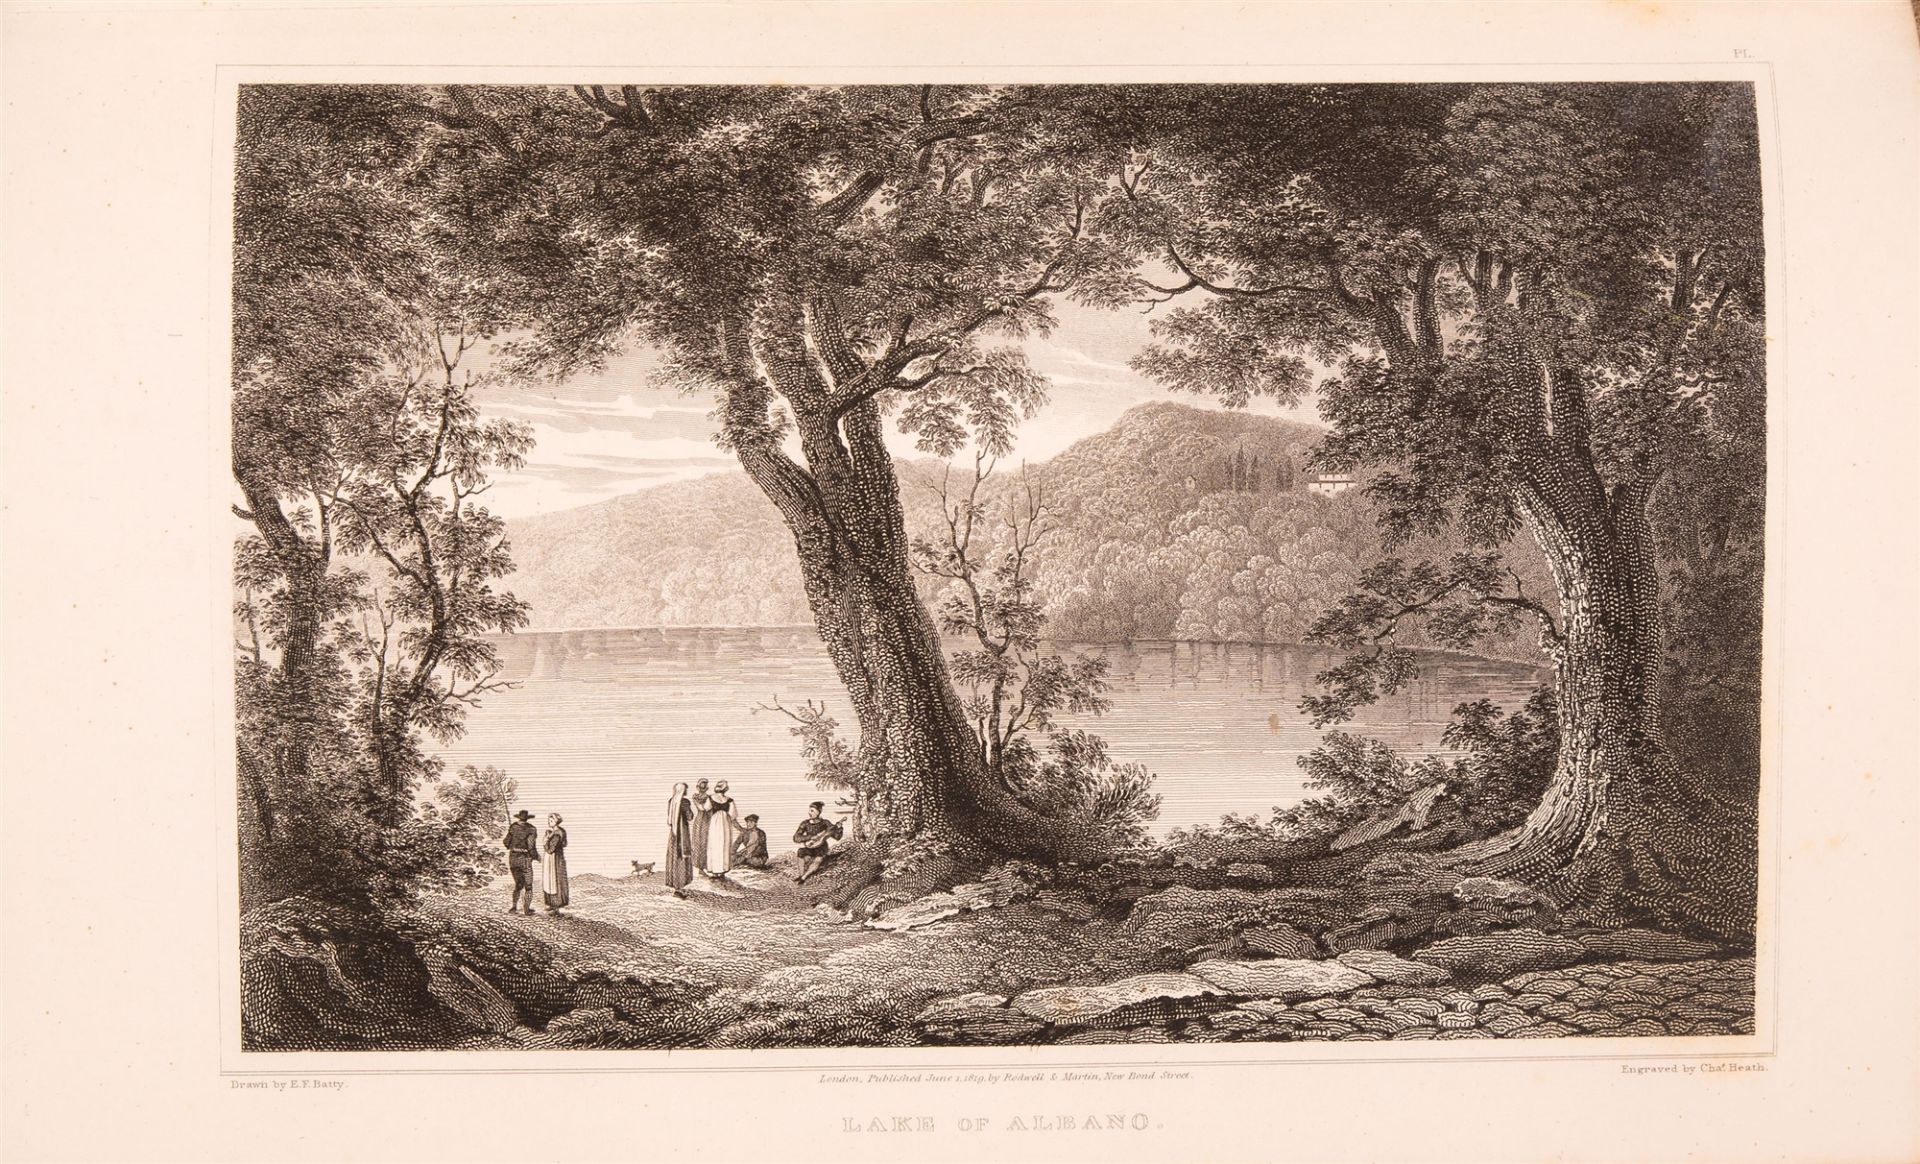 E. F. Batty, Italian scenery. London 1817.